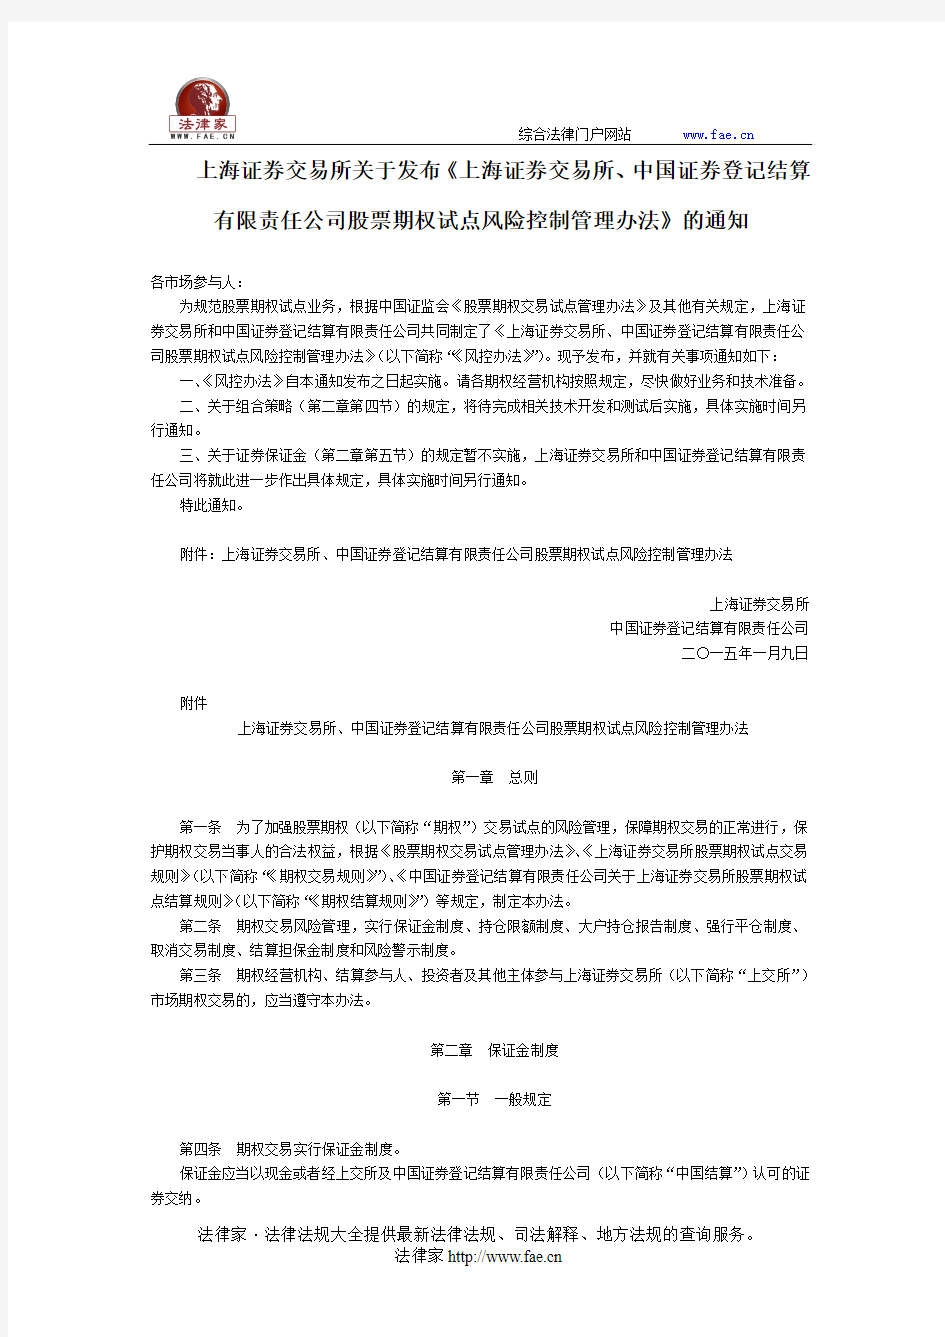 上海证券交易所关于发布《上海证券交易所、中国证券登记结算有限责任公司股票期权试点风险控制管理办法》的